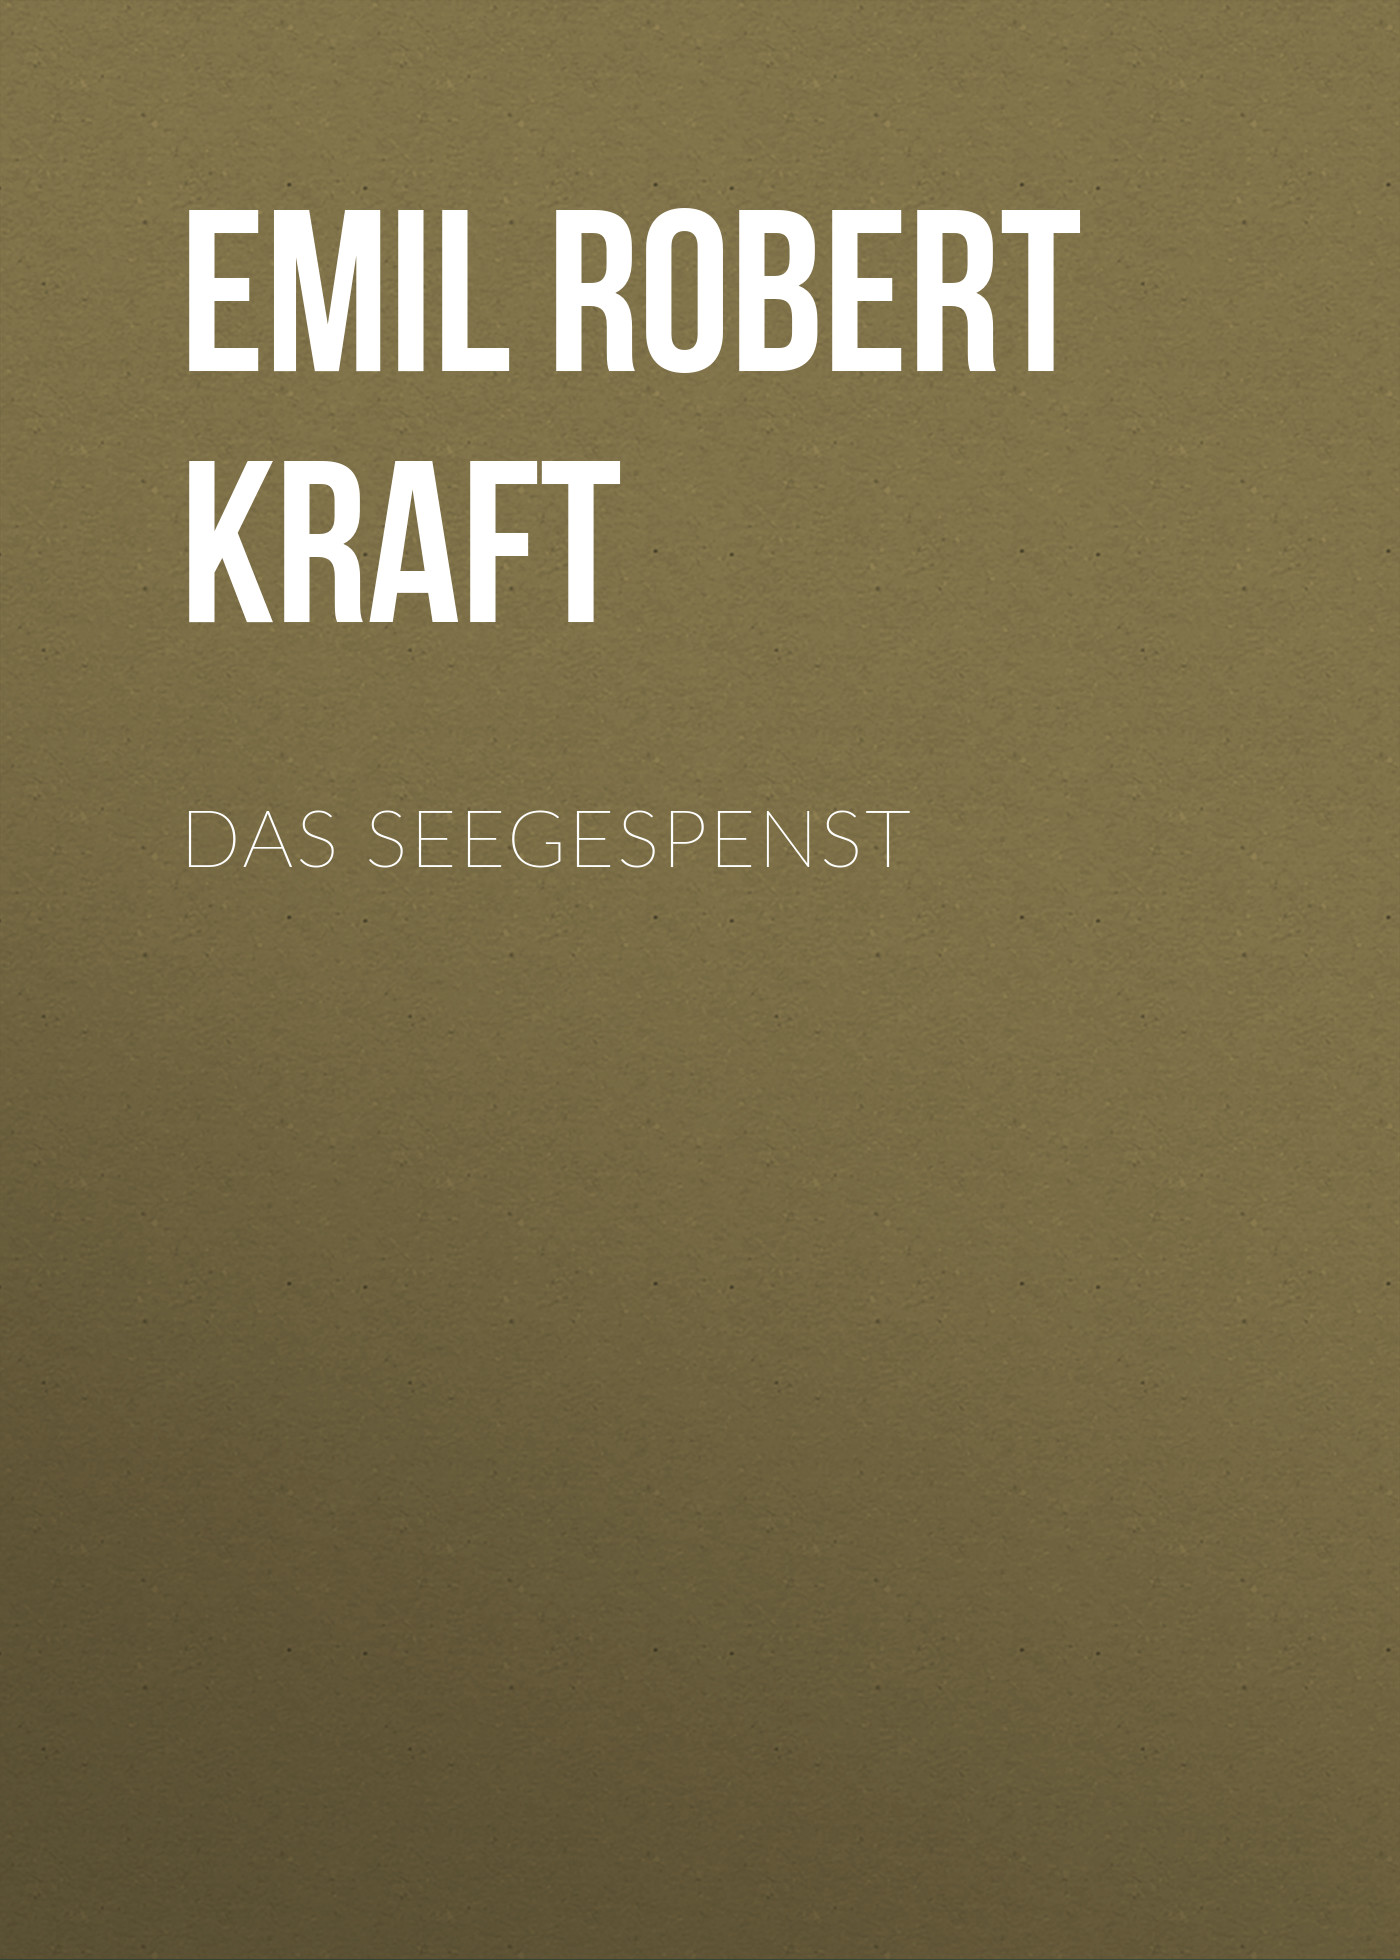 Книга Das Seegespenst из серии , созданная Emil Robert Kraft, может относится к жанру Зарубежная классика. Стоимость электронной книги Das Seegespenst с идентификатором 48633124 составляет 0 руб.